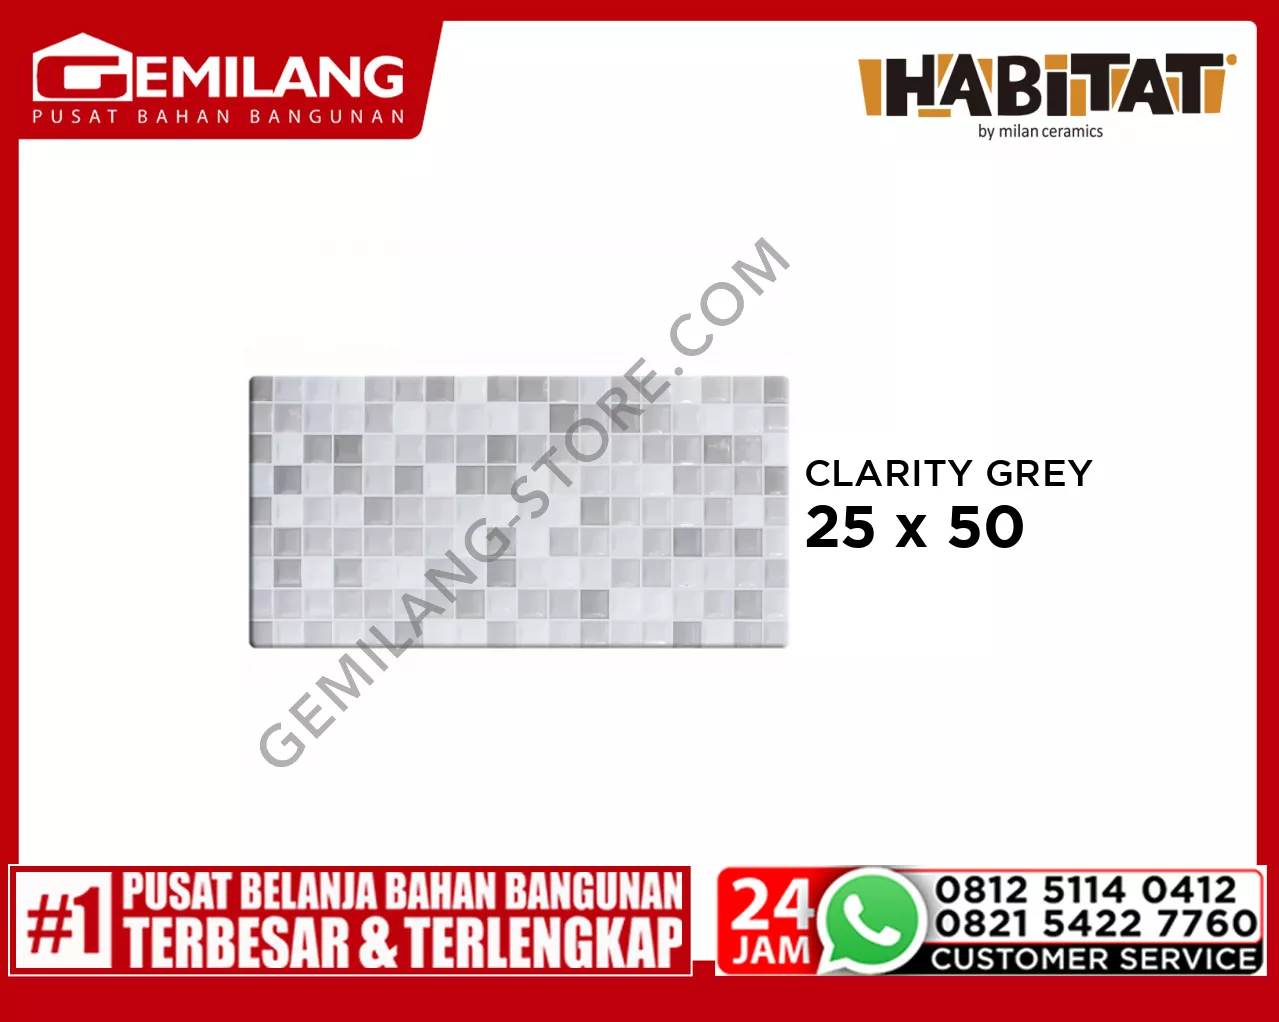 HABITAT CLARITY GREY 25 x 50